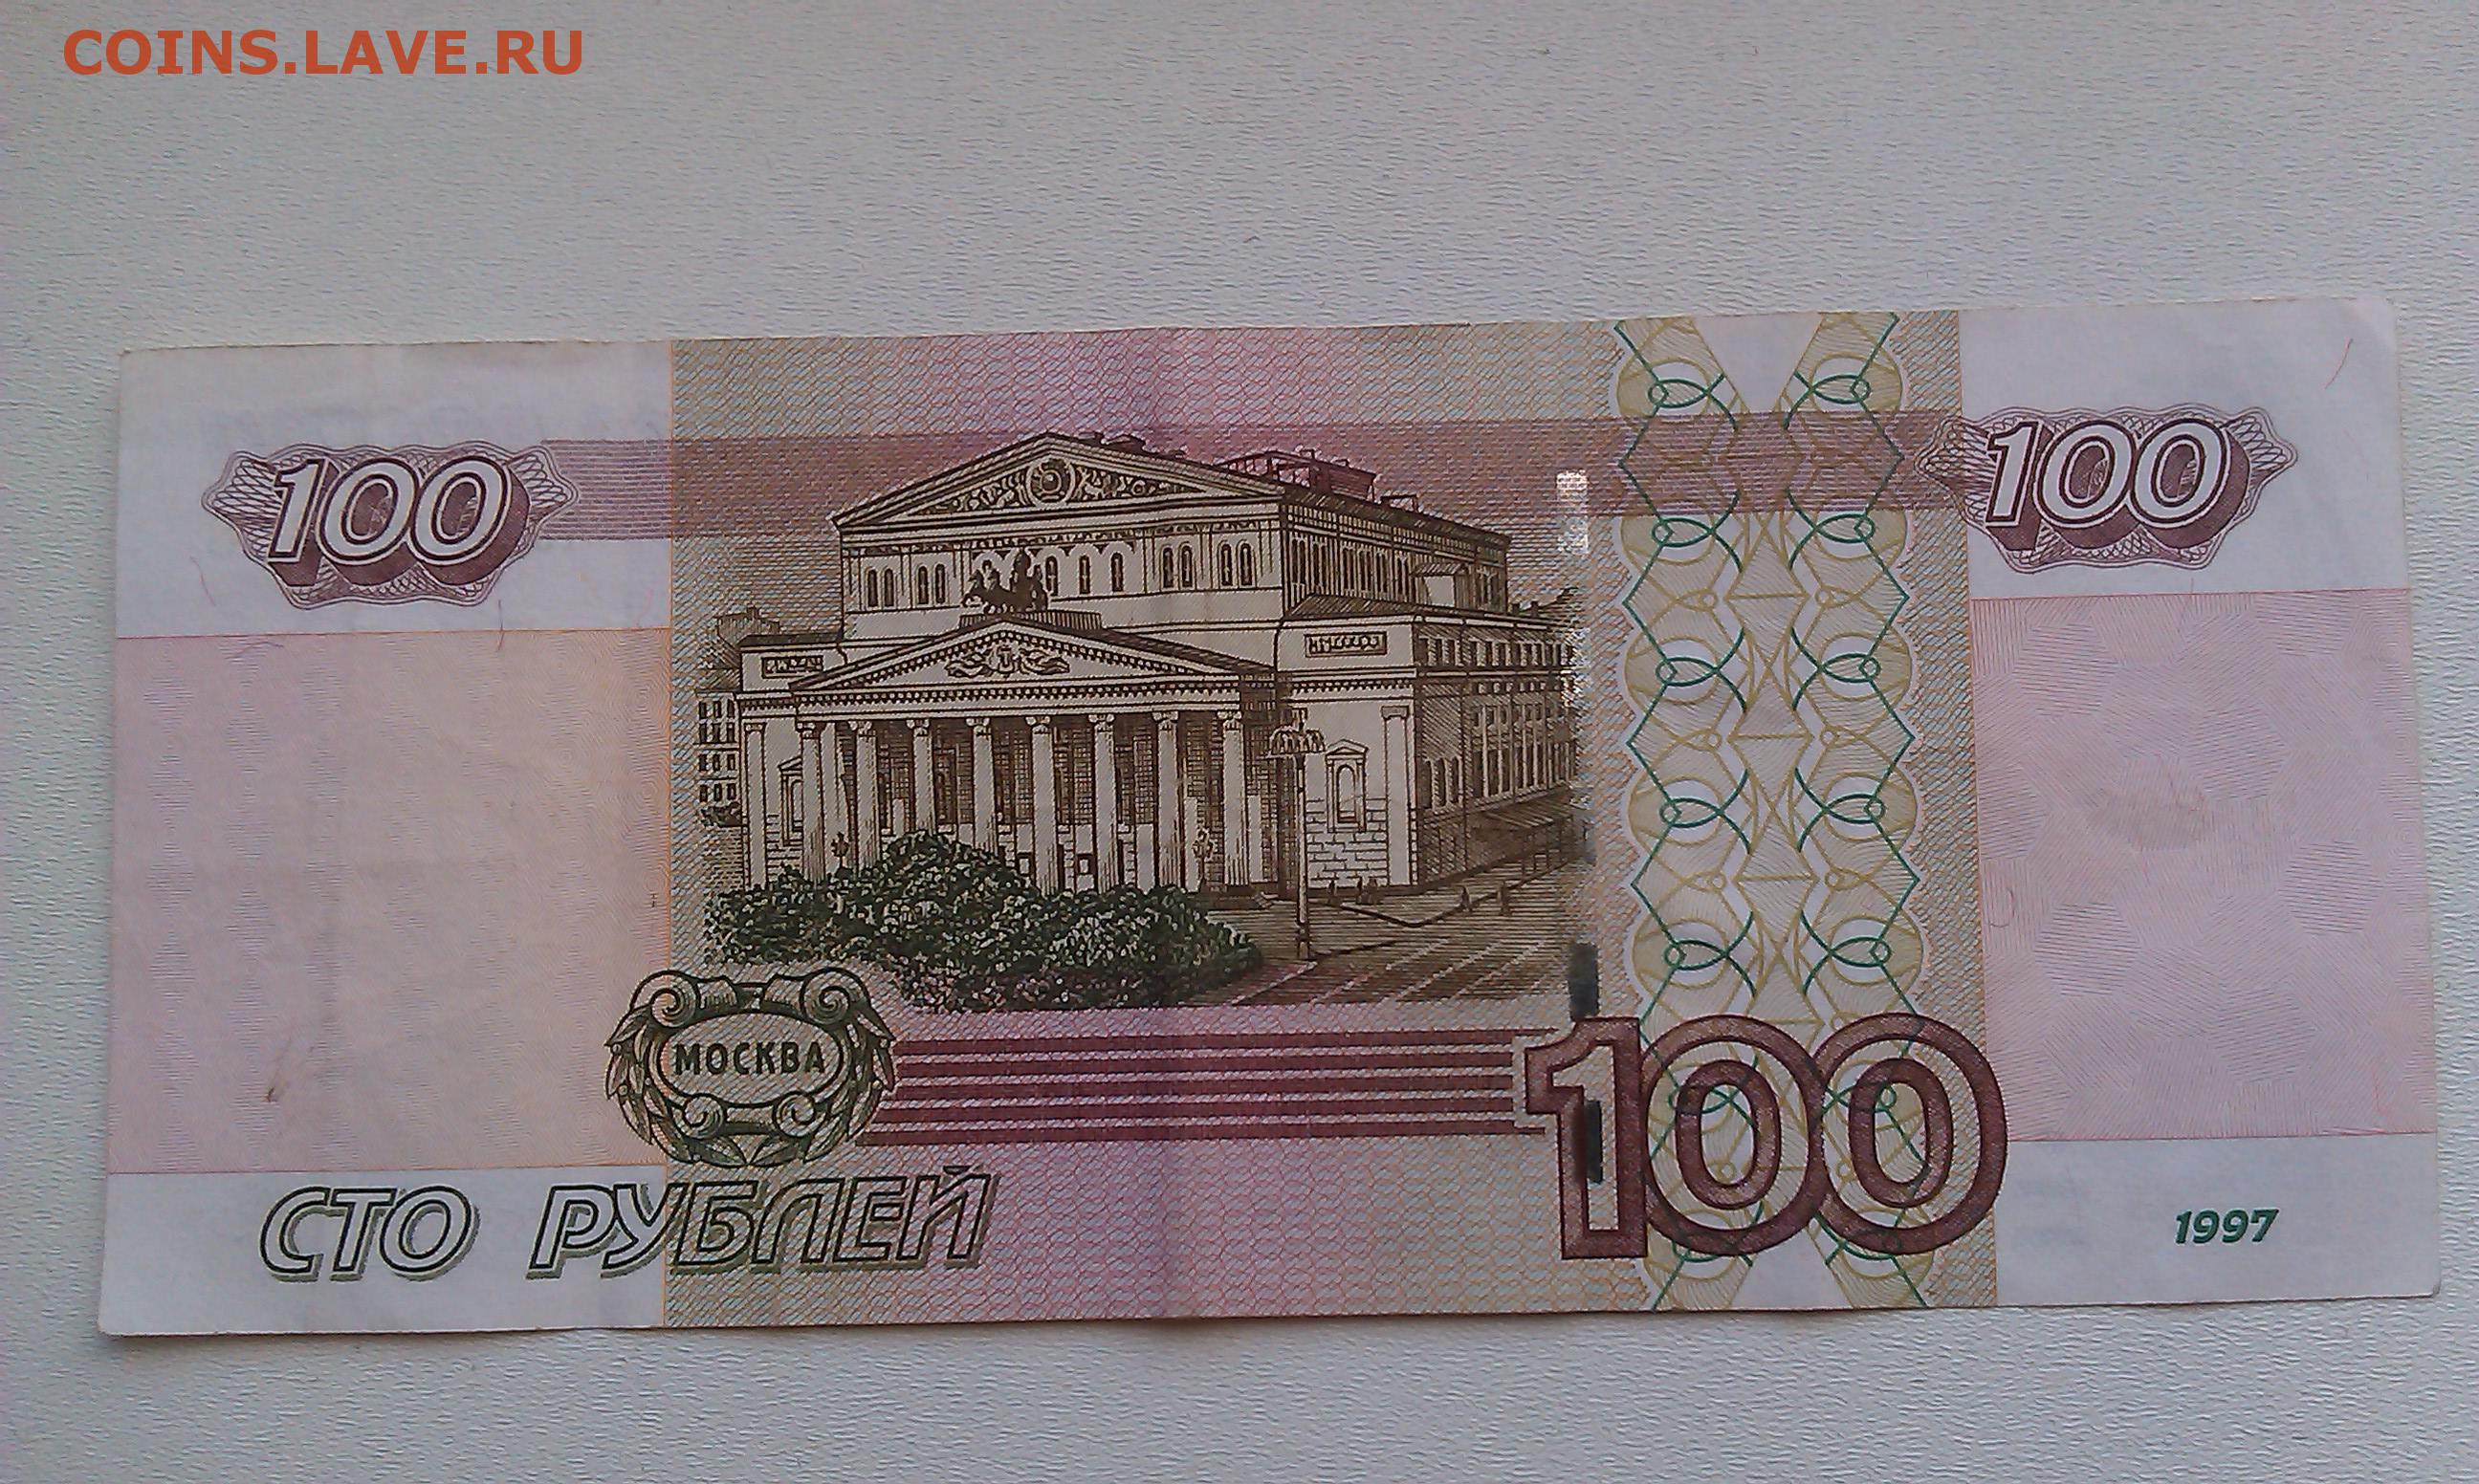 Четыре сто рублей. Купюра СТО рублей 1997 года. Купюра 100 рублей. 100 Рублей 1997 года. 100 Рублей 2001 года.